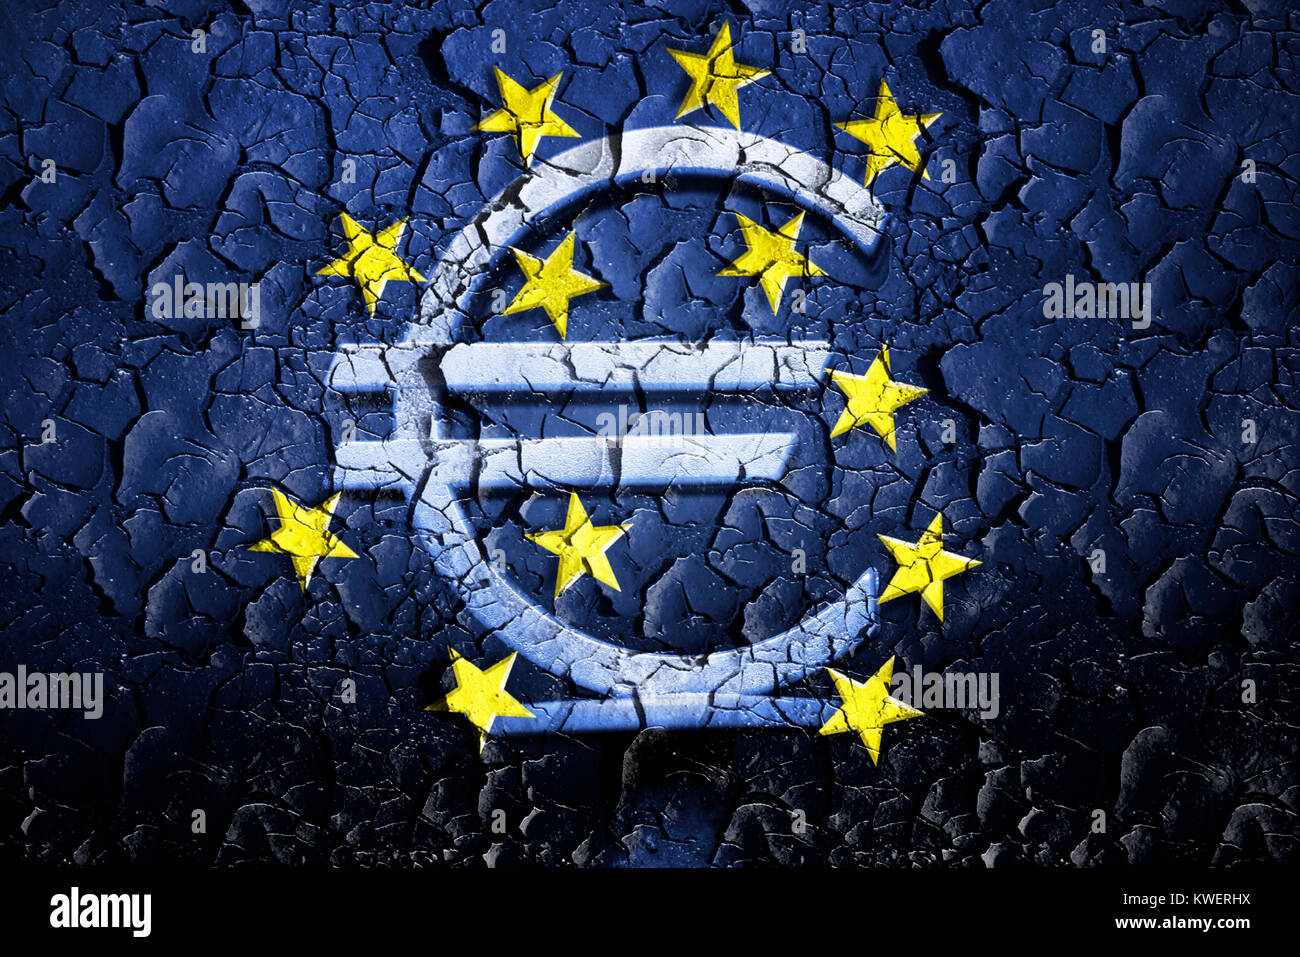 Eurosigns EZB sobre la tierra rota, la compra de préstamos estatales por el EZB, EZB-Eurozeichen auf gebrochener Erde, von Staatsanleihen Ankauf durch die EZB Foto de stock